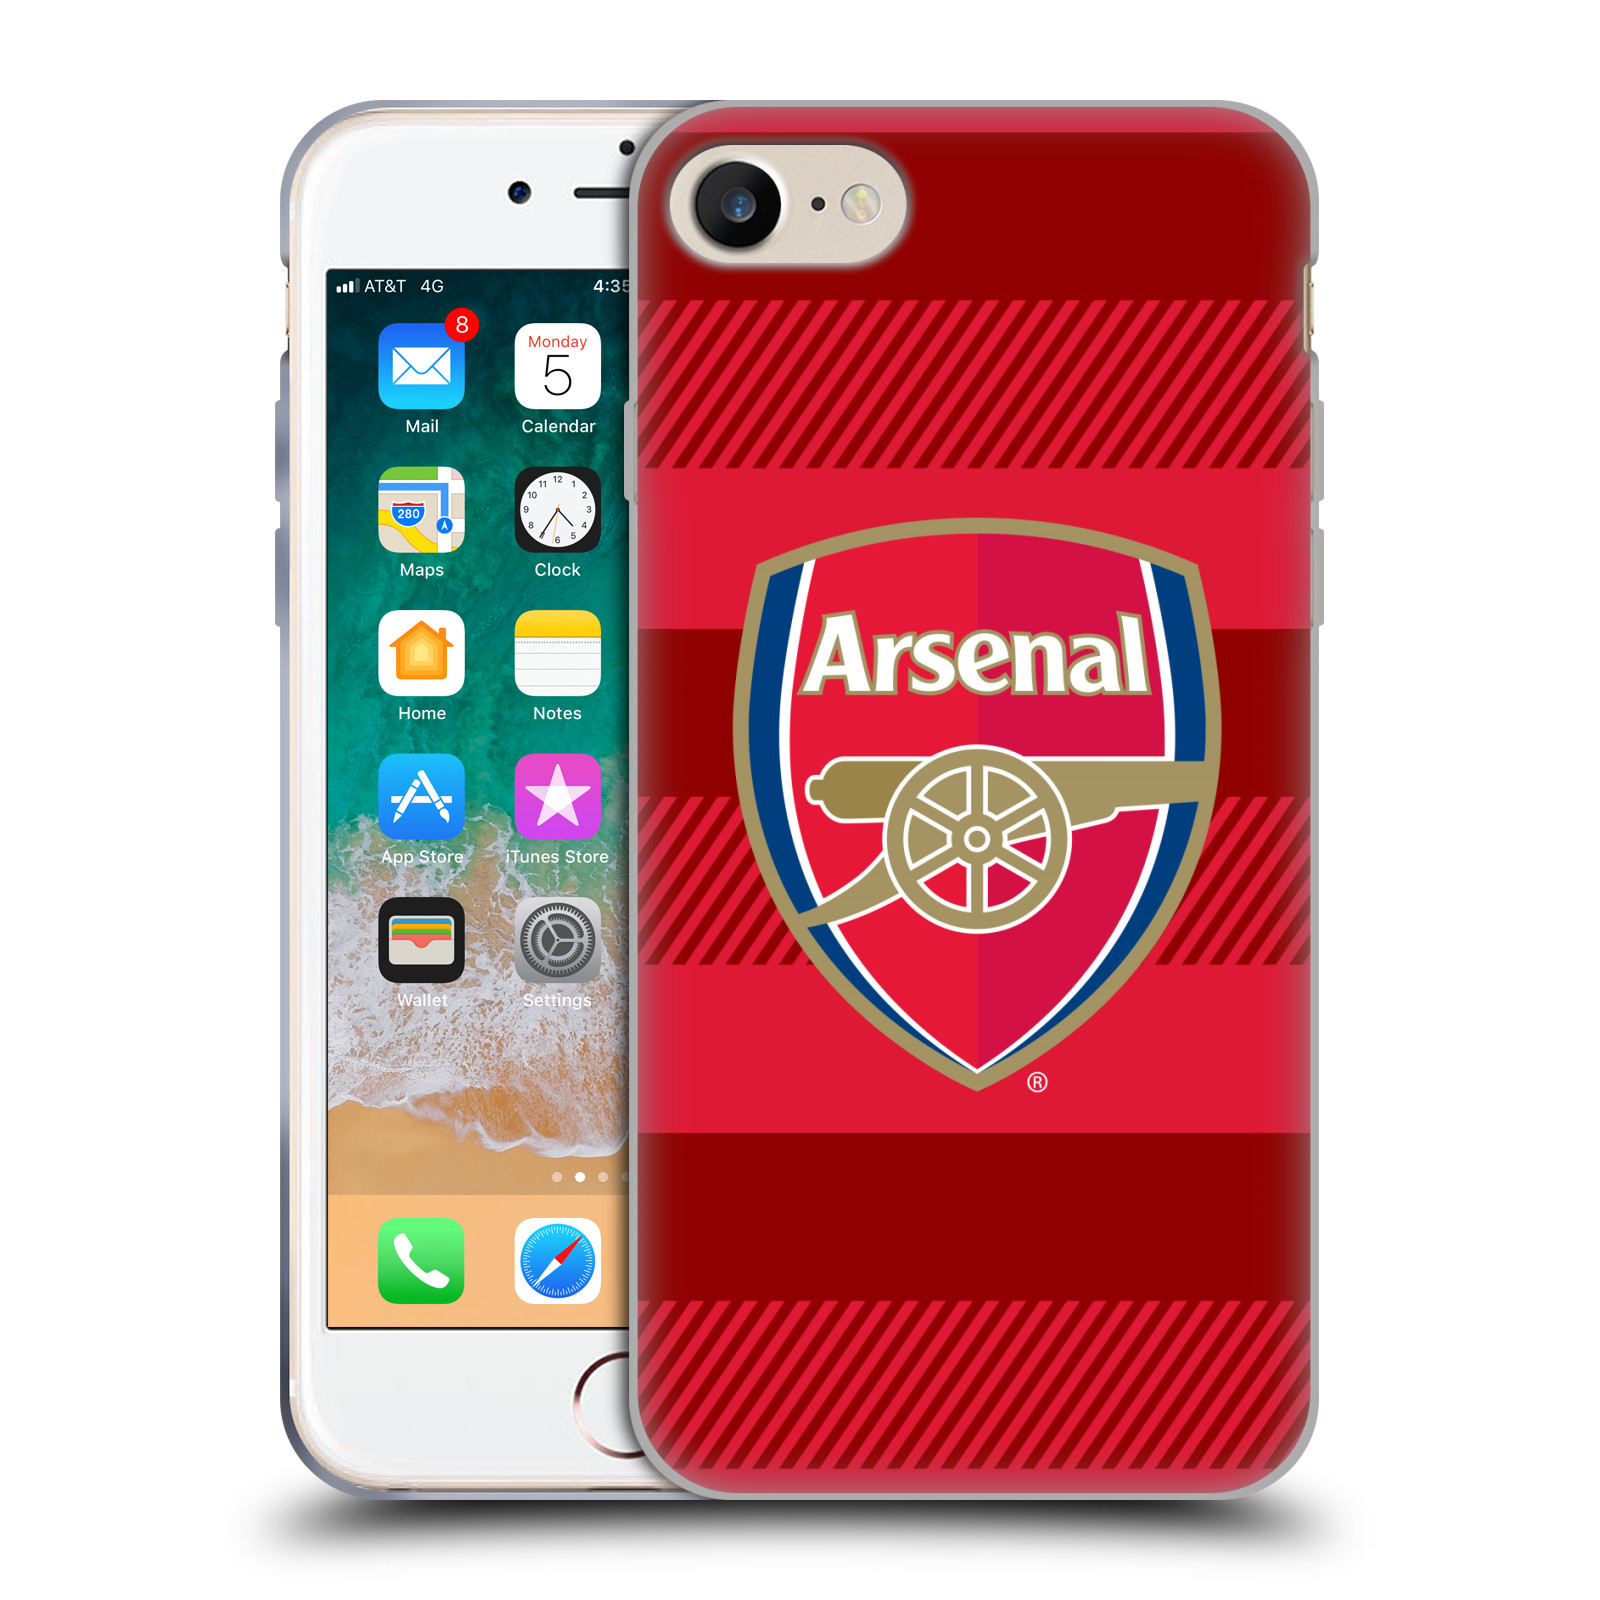 Silikonové pouzdro na mobil Apple iPhone SE 2022 / SE 2020 - Head Case - Arsenal FC - Logo s pruhy (Silikonový kryt, obal, pouzdro na mobilní telefon s motivem klubu Arsenal FC - Logo s pruhy pro Apple iPhone SE 2020 / Apple iPhone SE 2022)